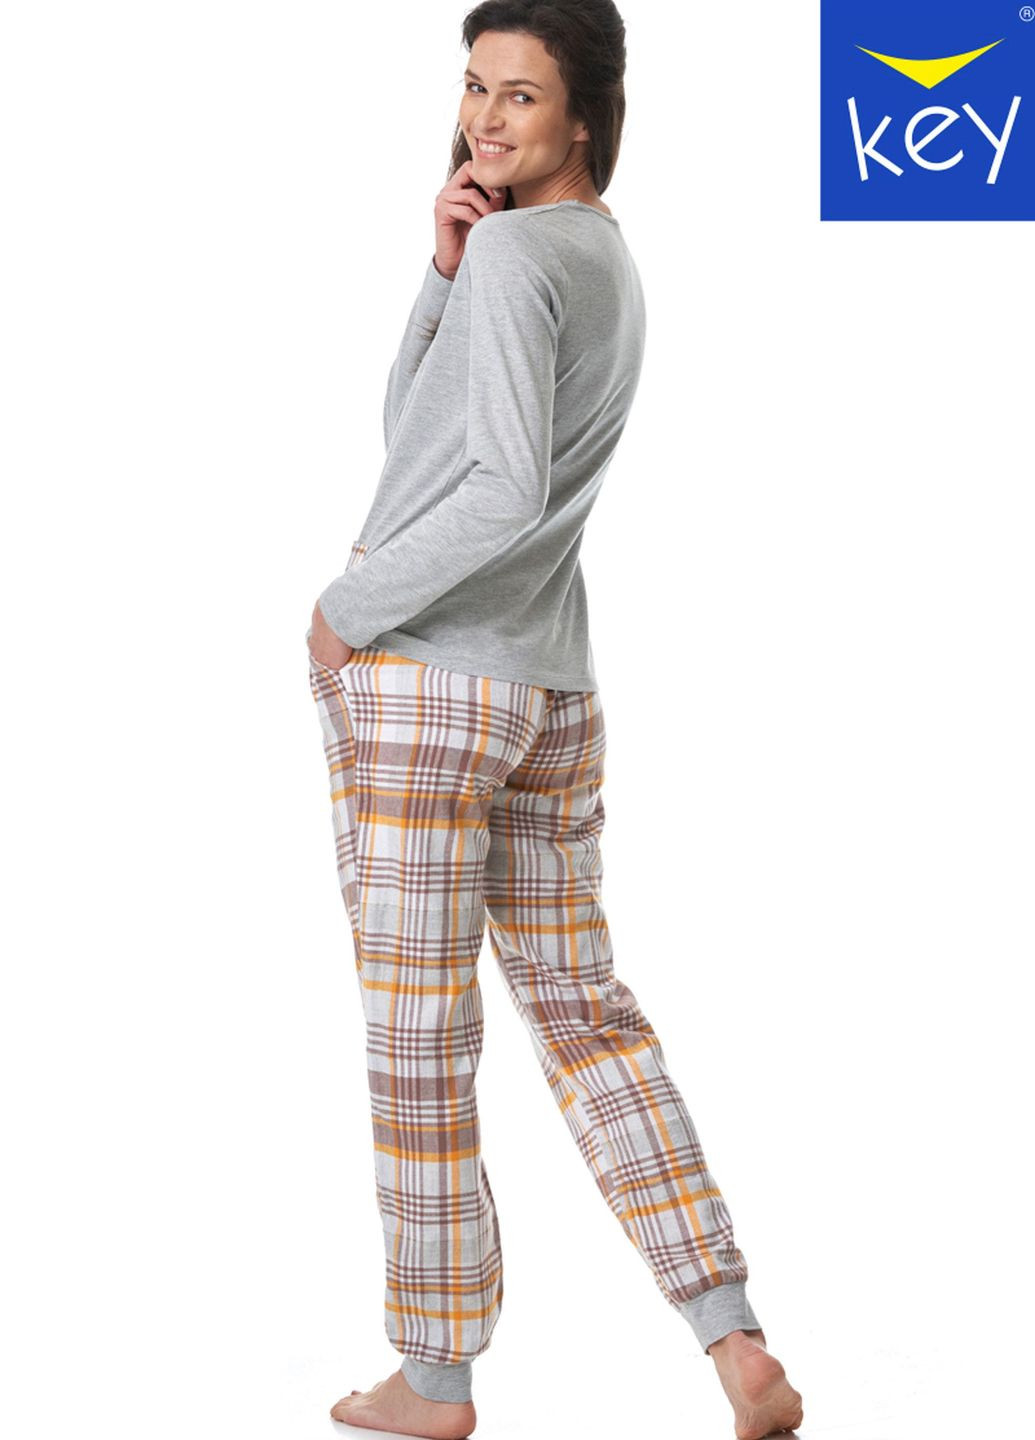 Комбинированная пижама женская lns 458 b23 лонгслив + брюки Key